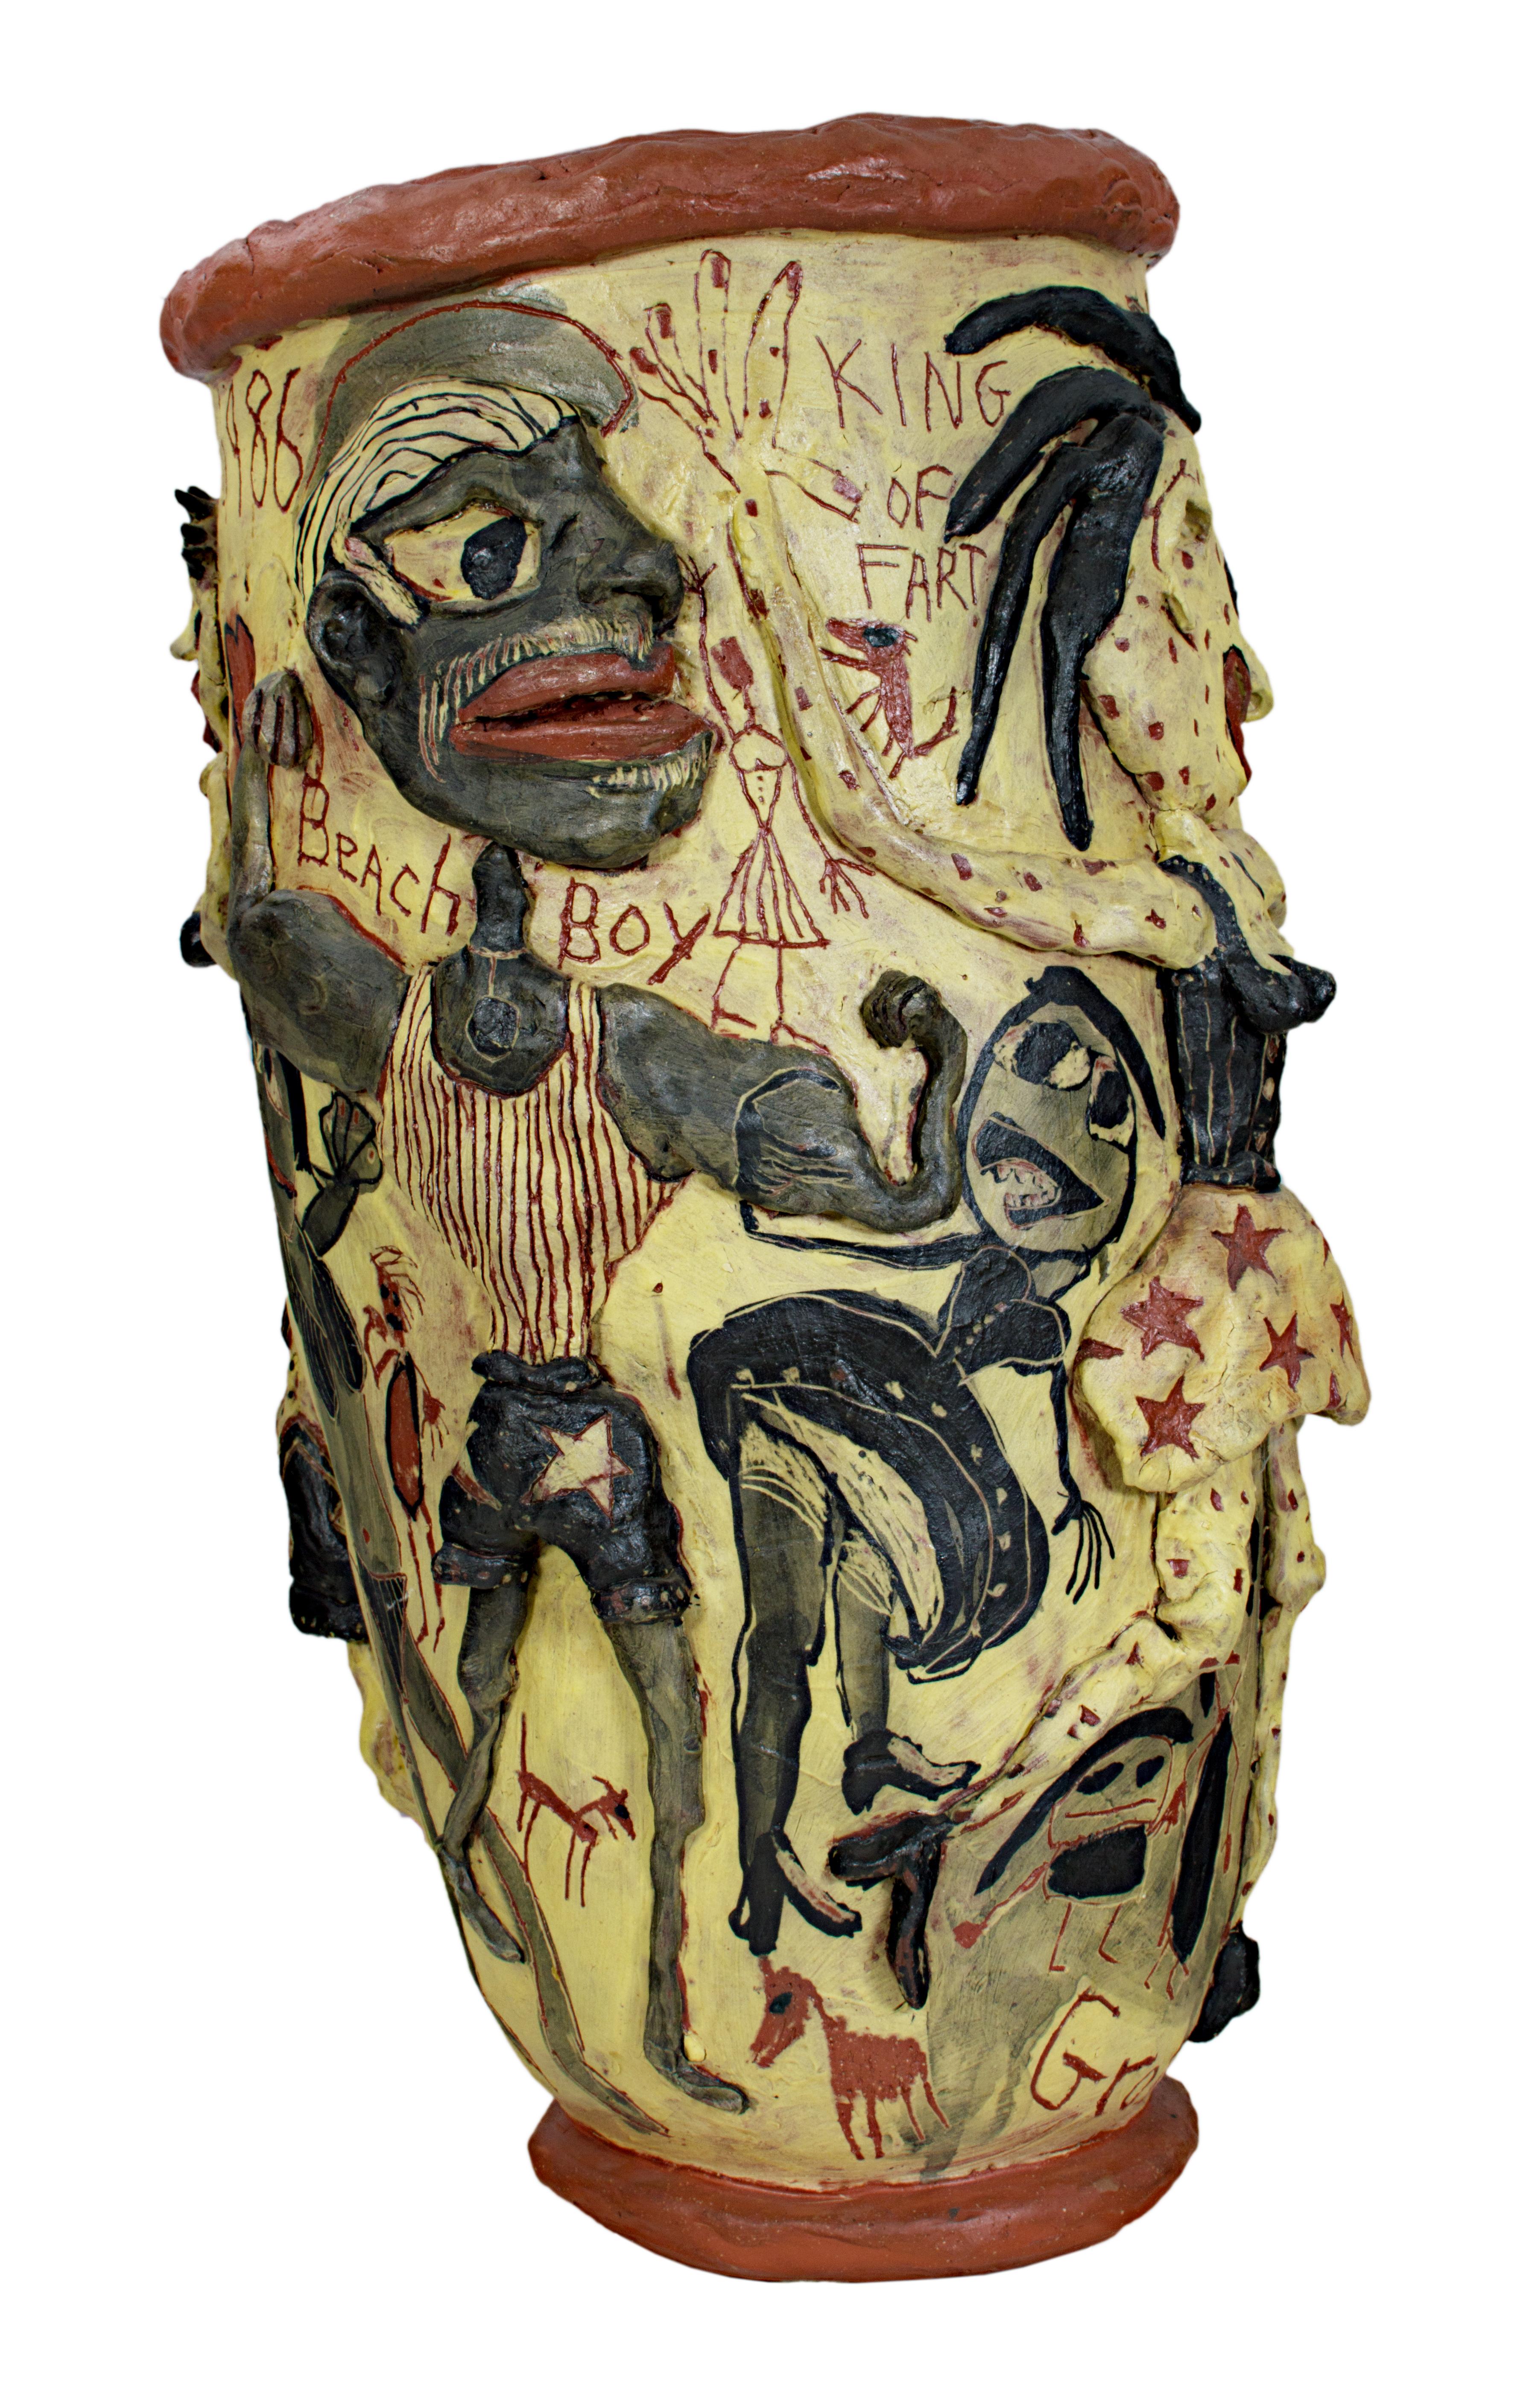 Die Keramikskulpturen des Künstlers Michael Gross aus Wisconsin sind persönliche Erzählungen, die eine ungewöhnliche Mischung aus irdischem Zauber und ursprünglicher Vitalität offenbaren. Der Künstler arbeitet mit einer Vielzahl von Formen, darunter